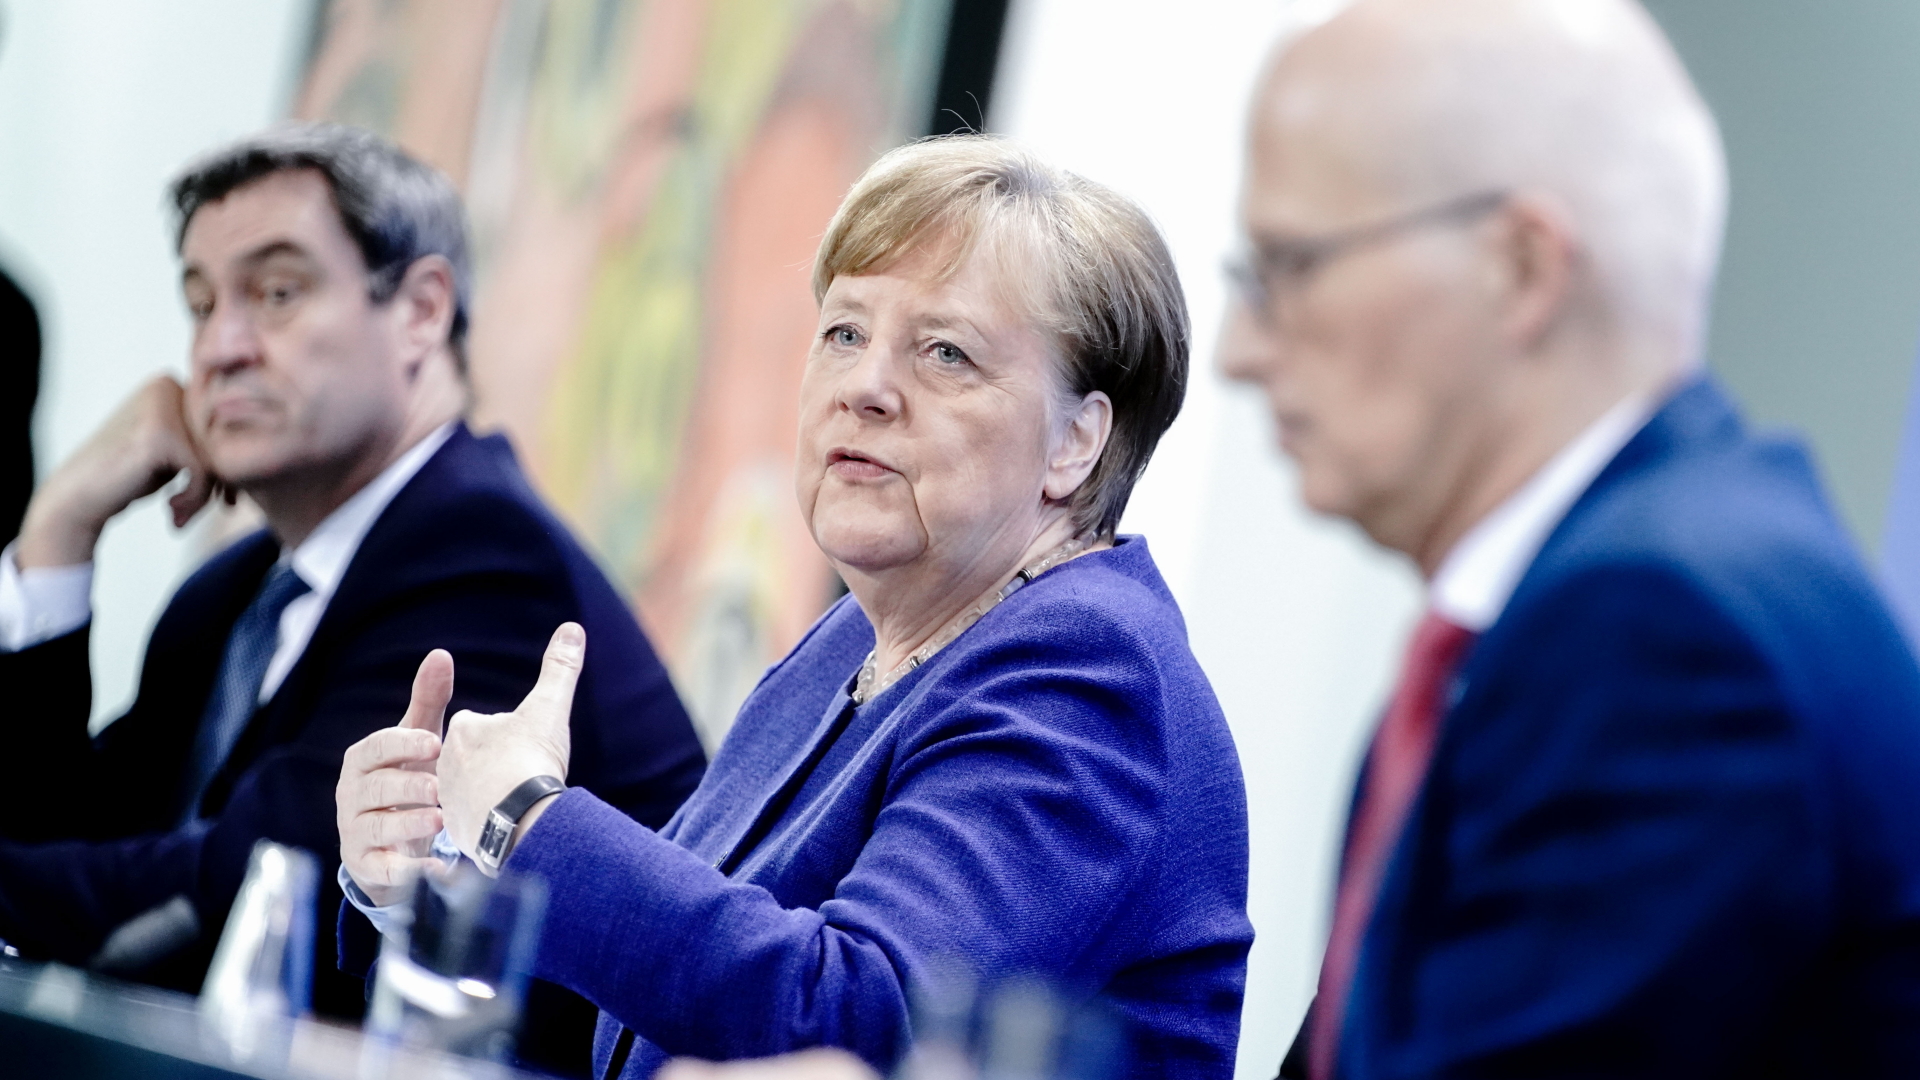 Bundeskanzlerin Angela Merkel präsentierte die Beschlüsse zusammen mit dem bayerischen Ministerpräsidenten Markus Söder (li.) und Peter Tschentscher, dem Ersten Bürgermeister von Hamburg. | dpa